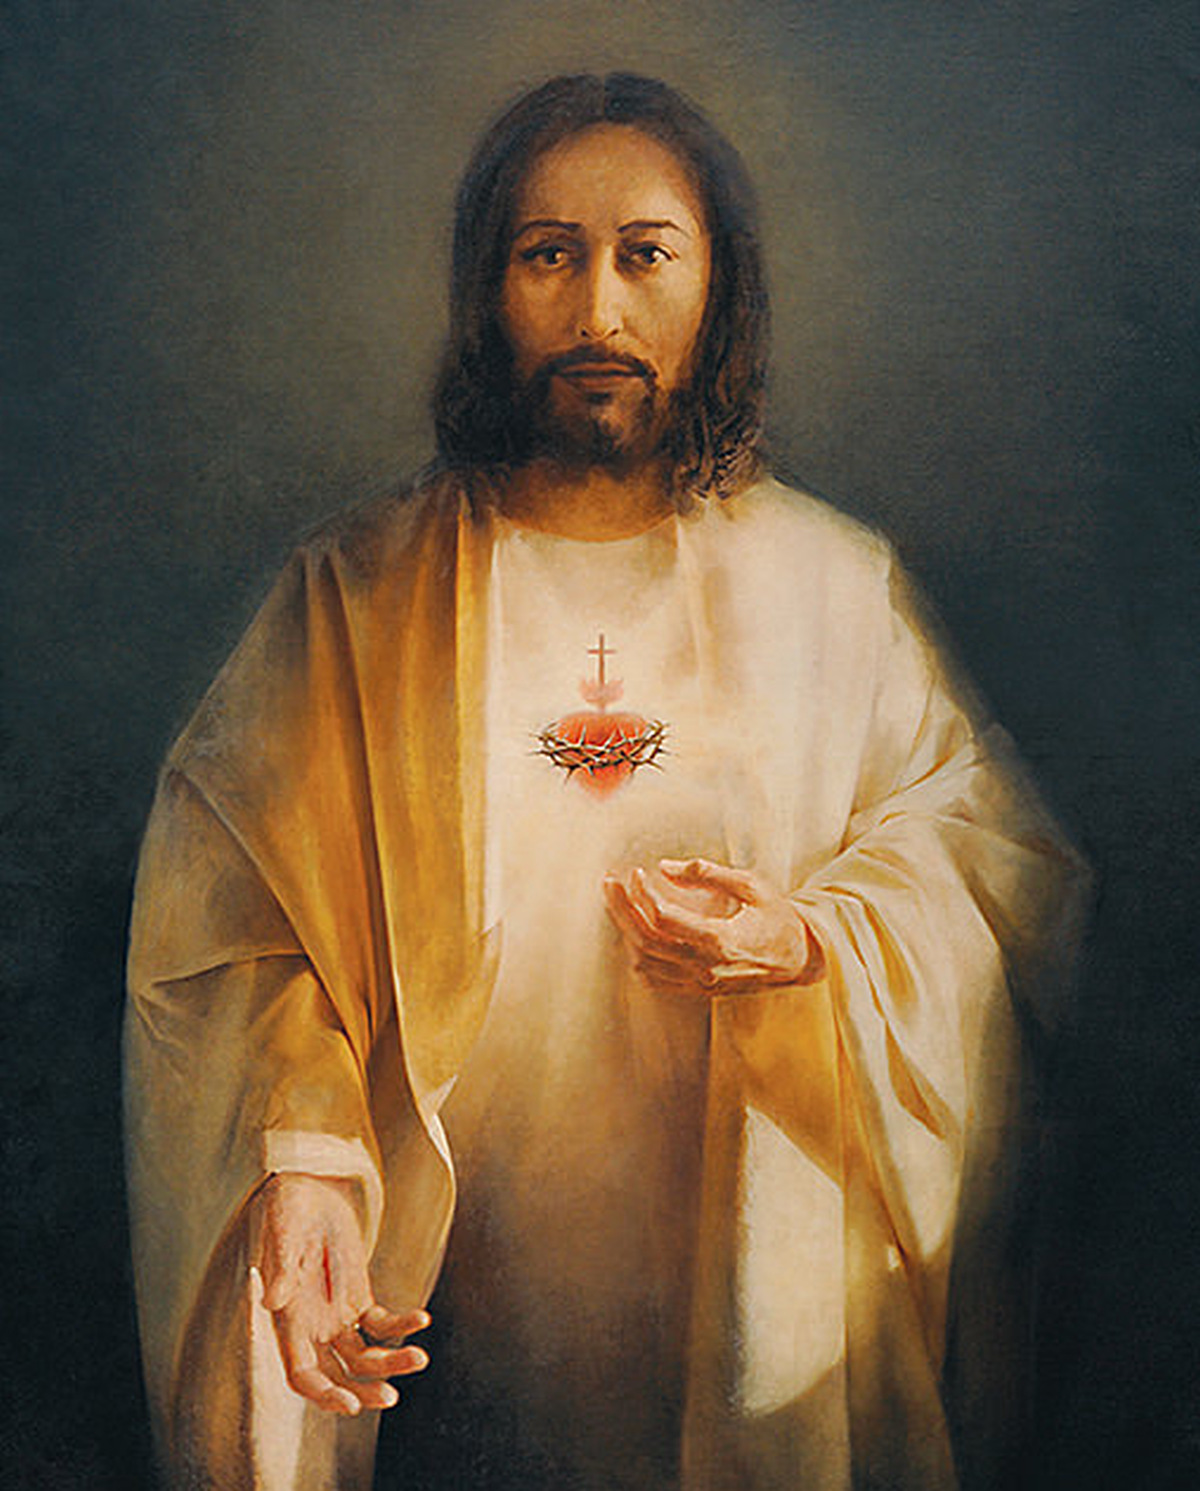 Odnowienie Aktu Poświęcenia Narodu Polskiego Najświętszemu Sercu Pana Jezusa – 11.06.2021r.